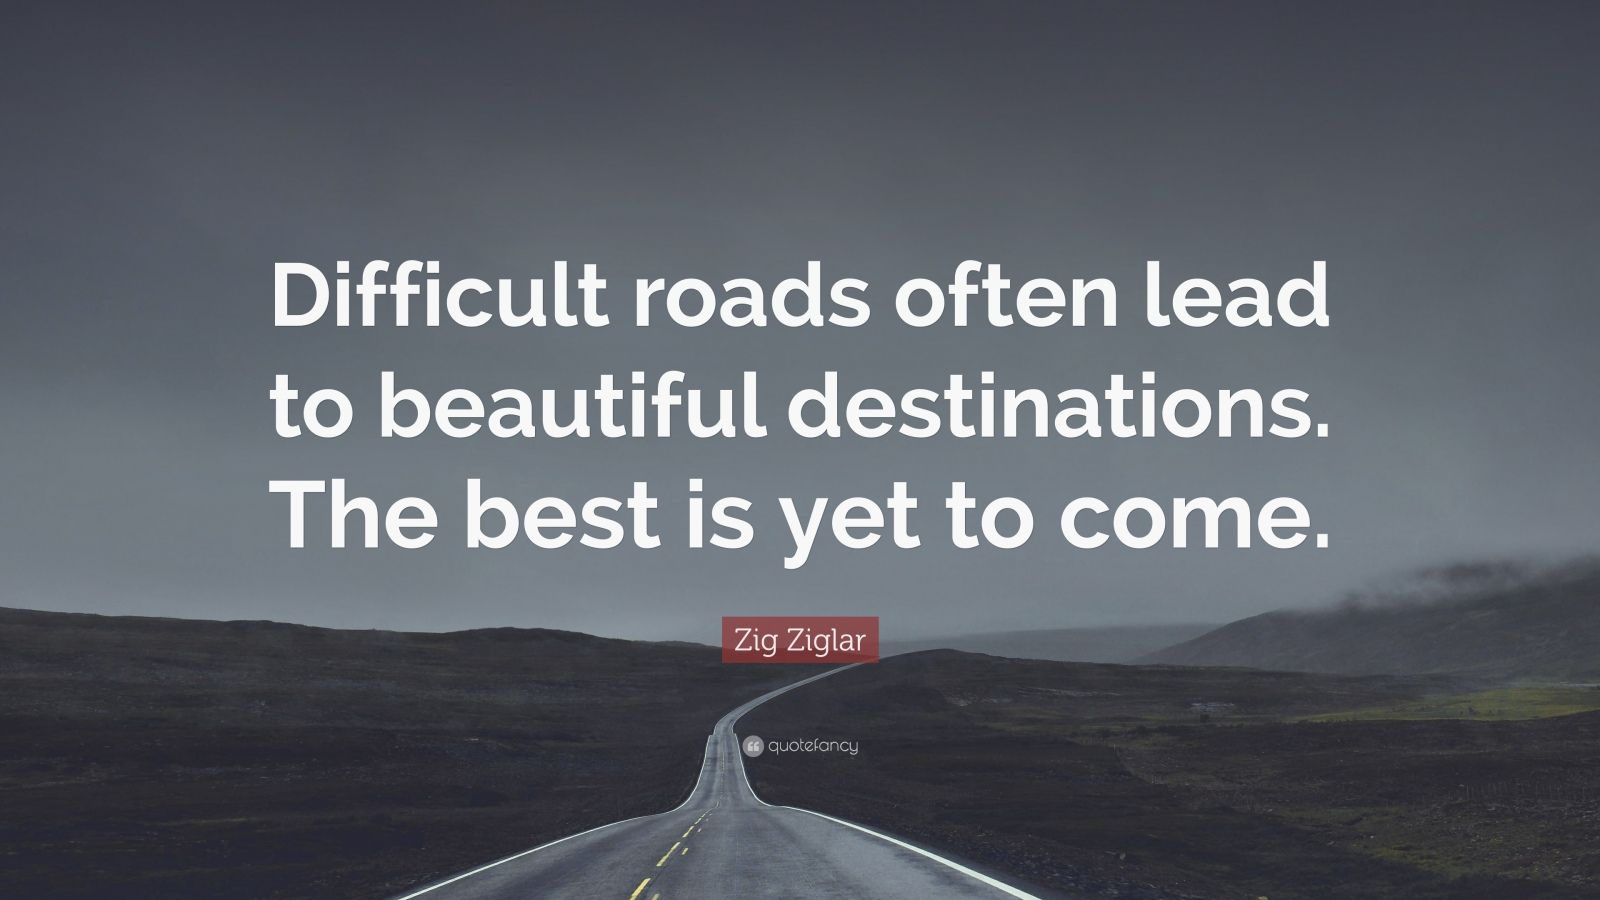 broken roads lead to the best destinations